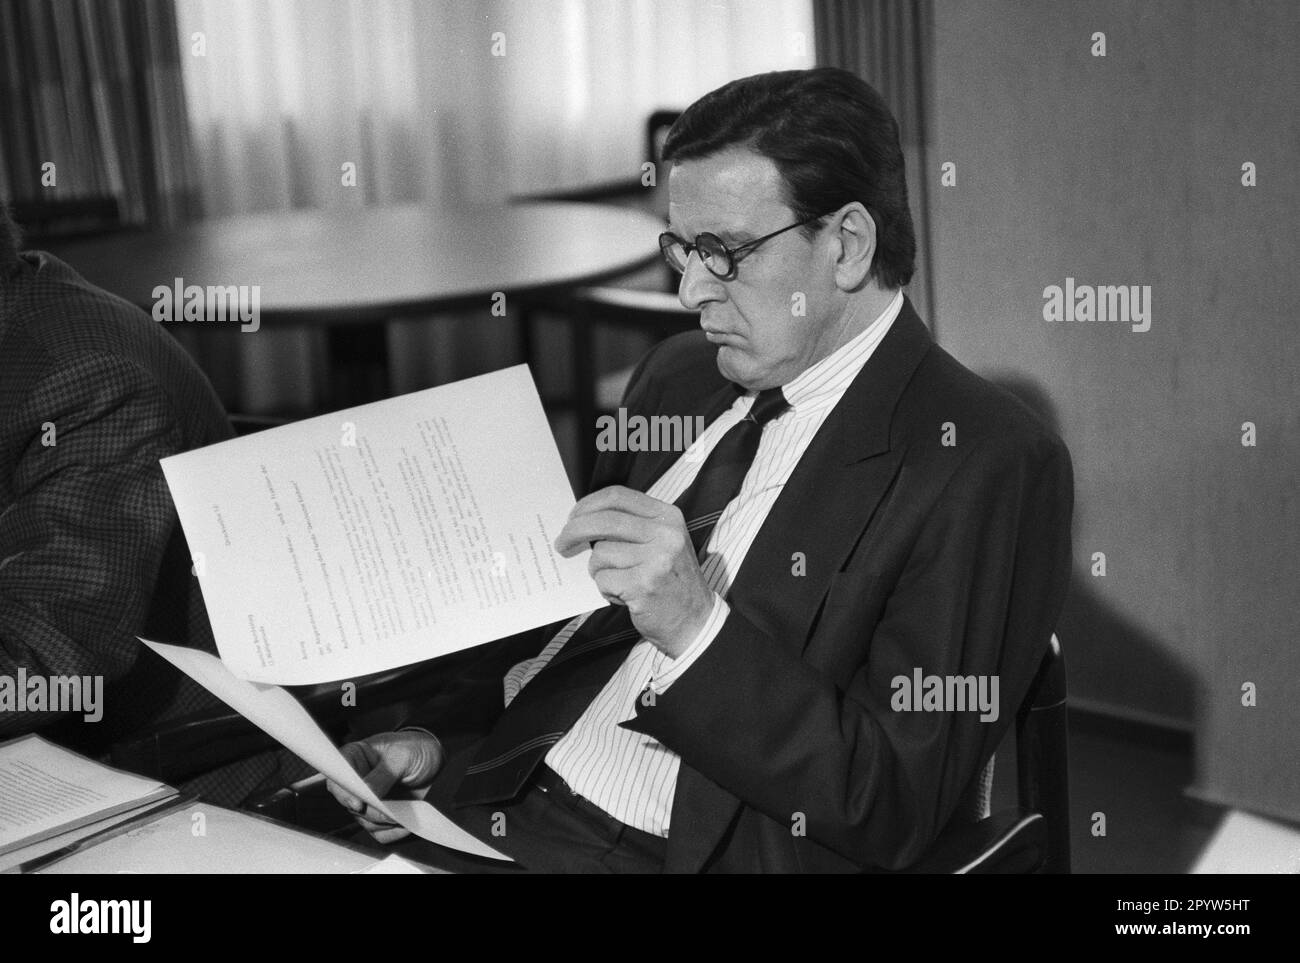 Deutschland, Bonn, 01-23-1992. Archivieren. 32-09-14 SPD-Präsidiumssitzung Foto: Gerhard Schroeder [maschinelle Übersetzung] Stockfoto